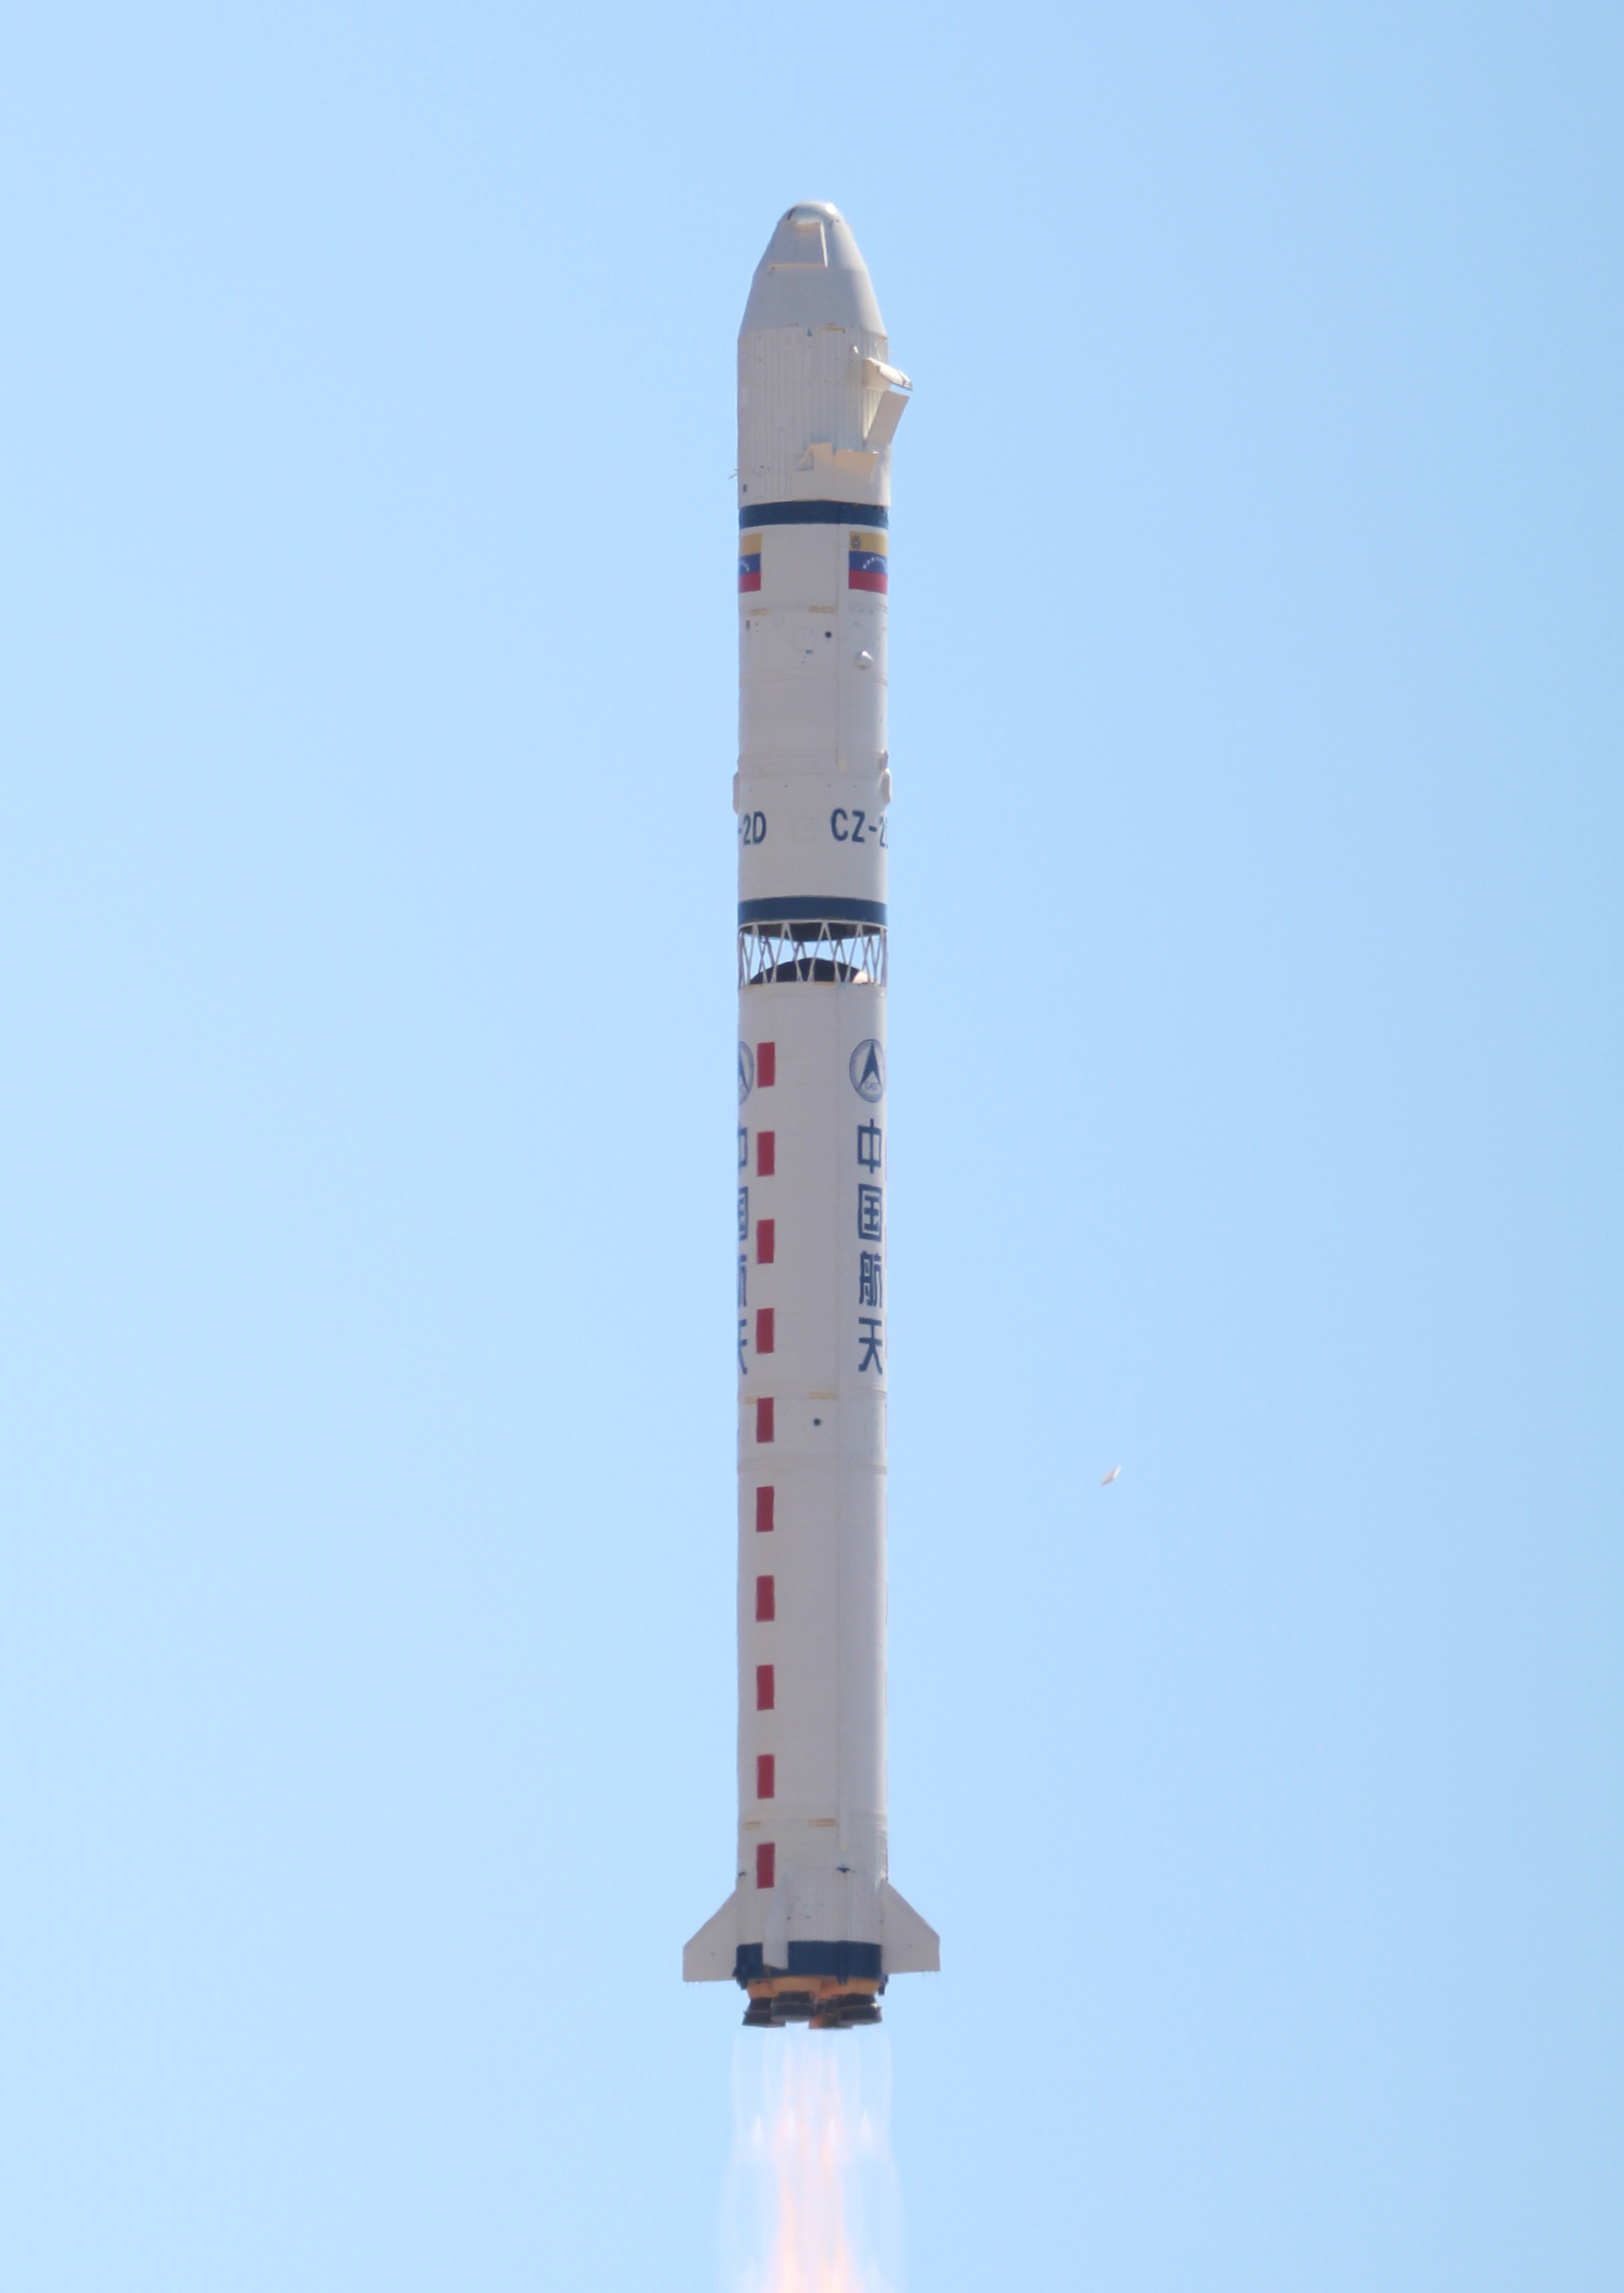 Il vettore Lunga Marcia 2D durante il lancio del satellite venezuelano VRSS-1 / Miranda il 28 settembre 2012 Credits: Cristóbal Alvarado Minic